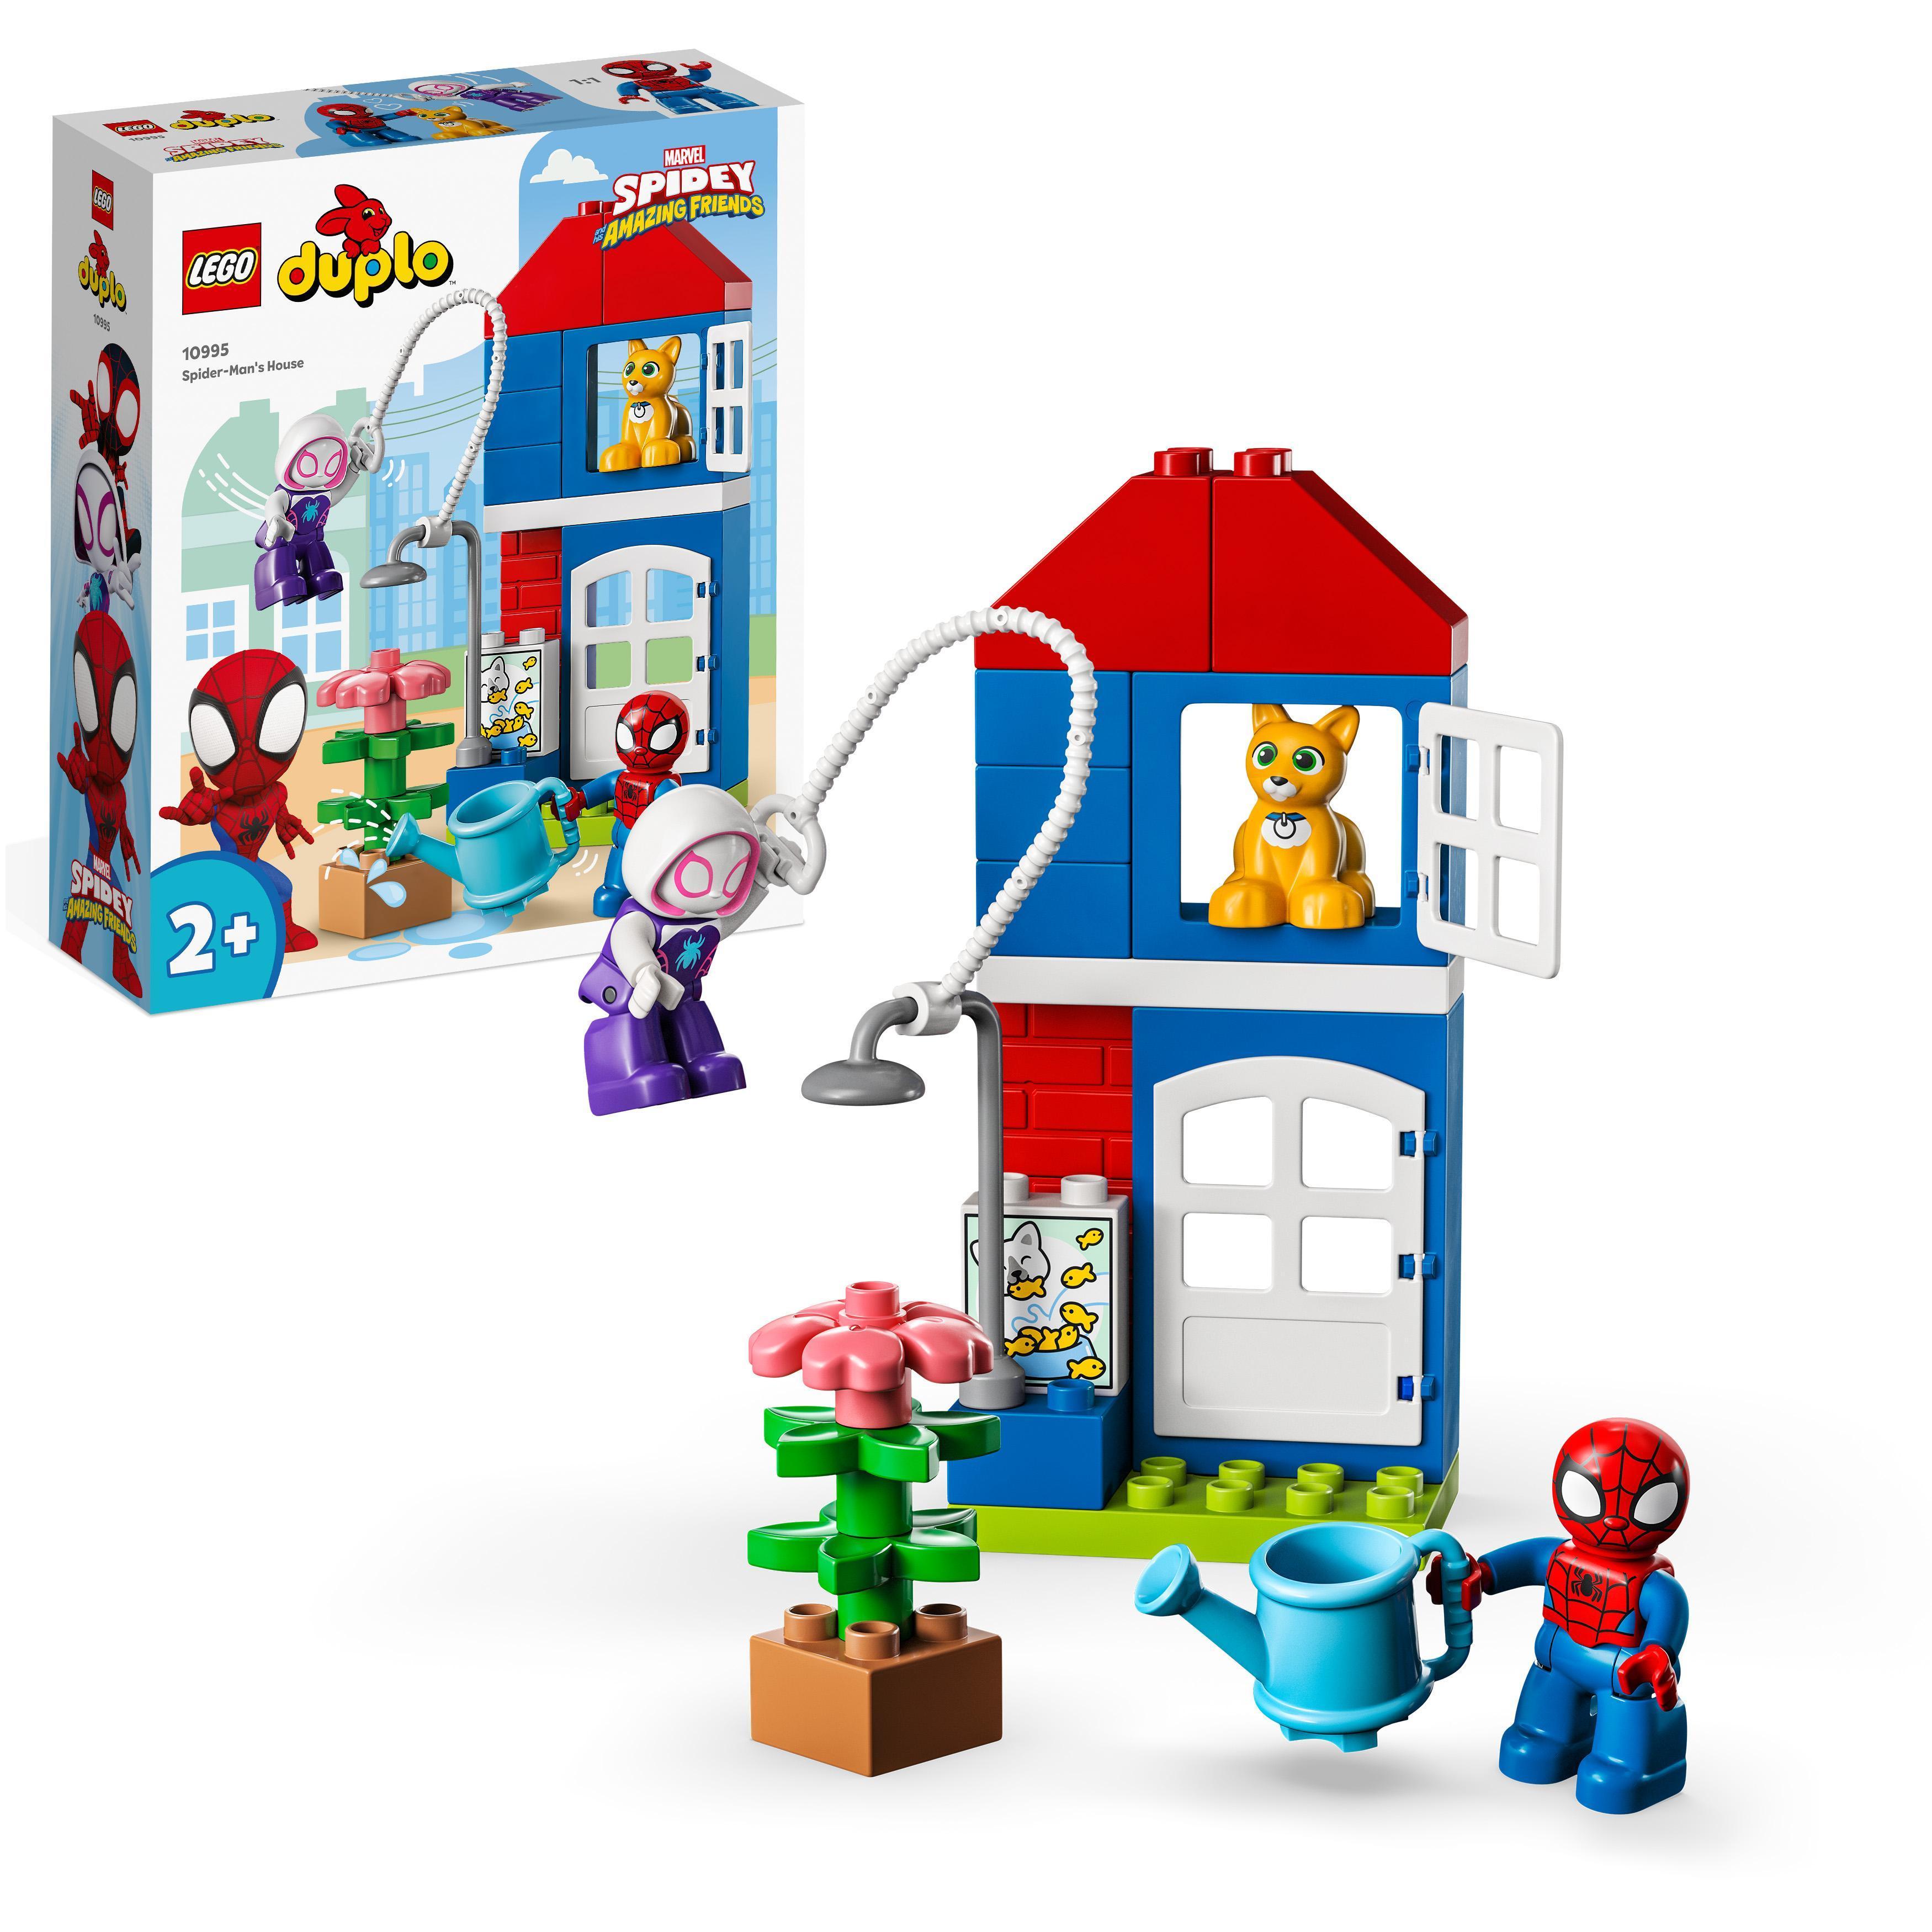 LEGO DUPLO - Spider-Mans hus - Leker